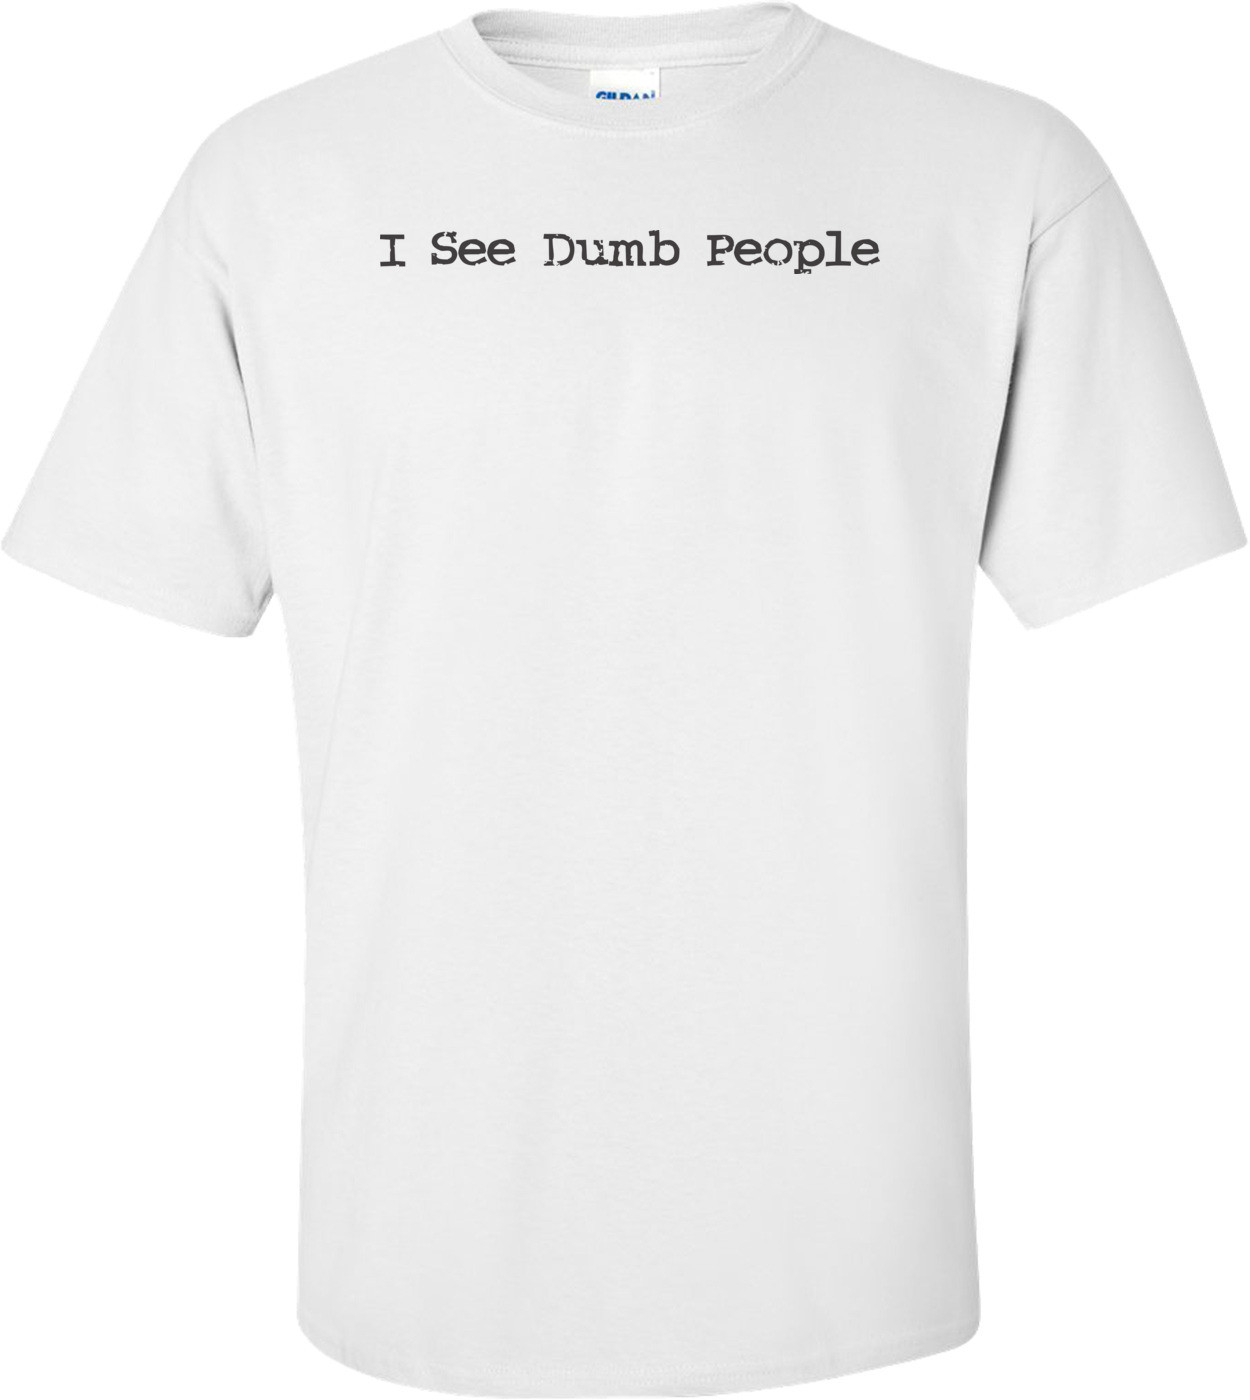 I See Dumb People T-shirt